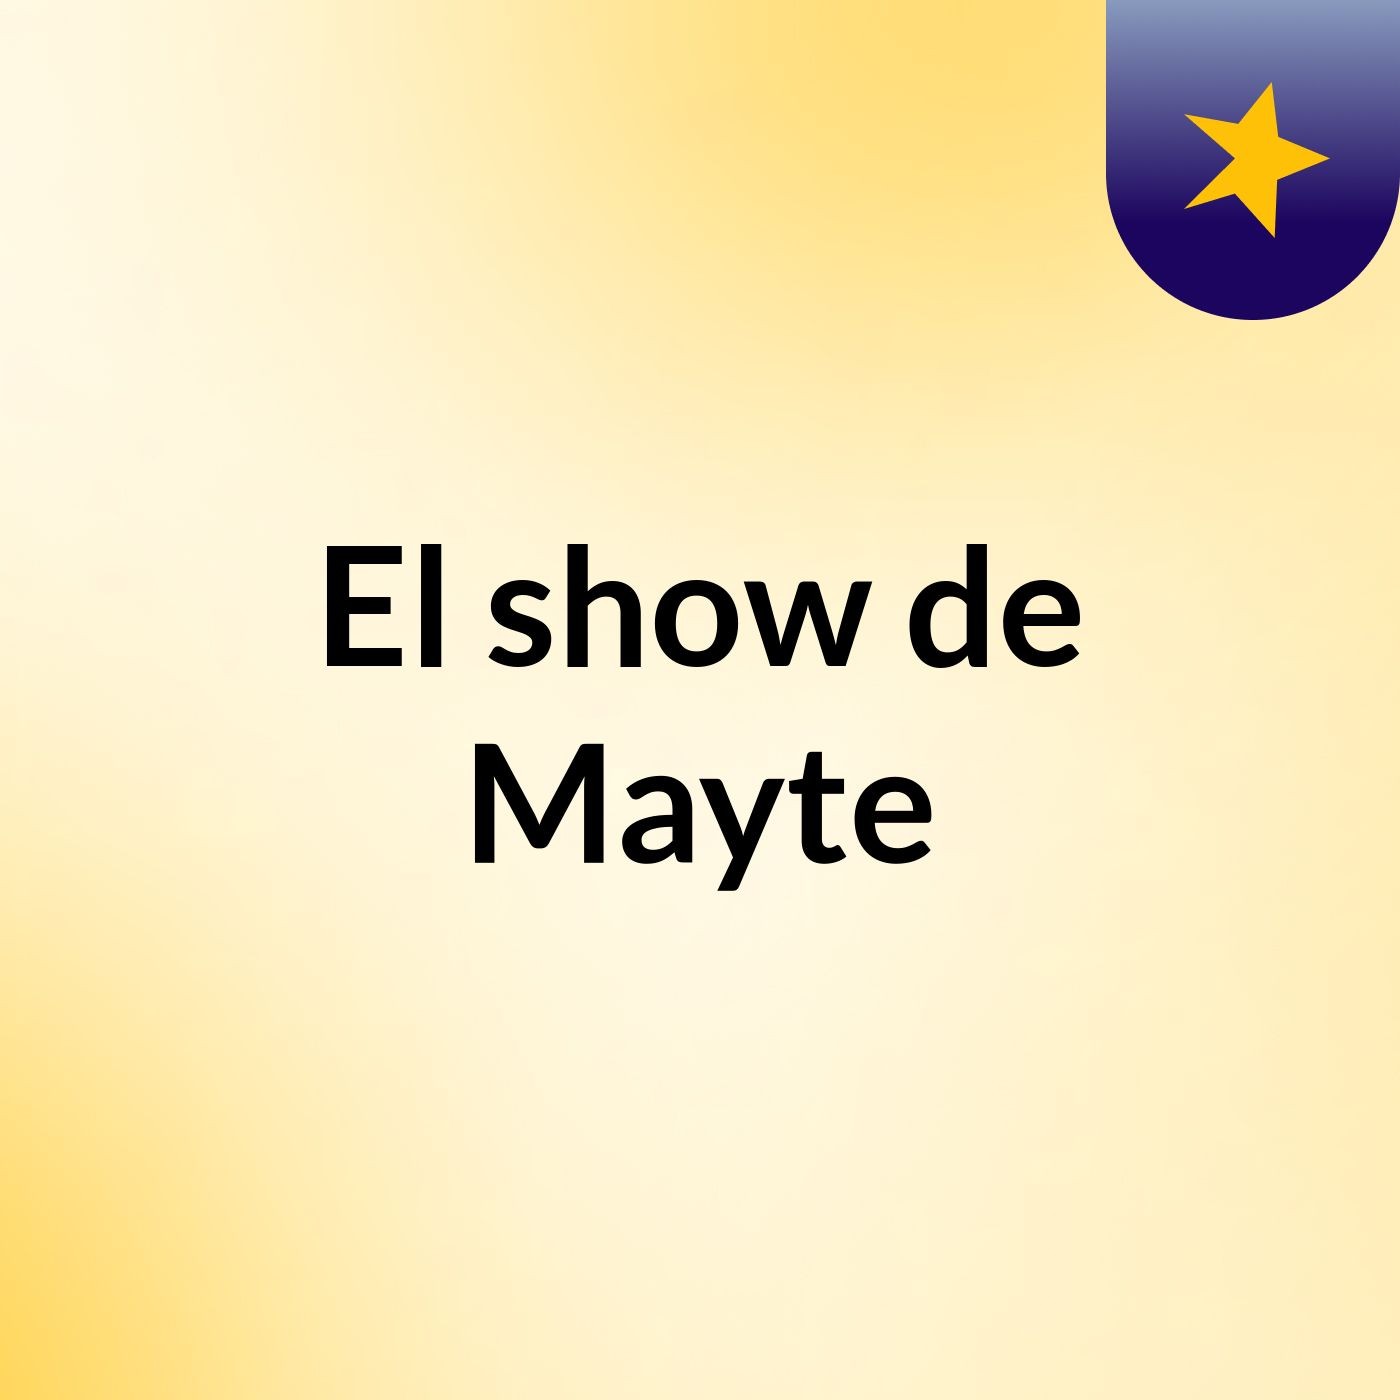 El show de Mayte